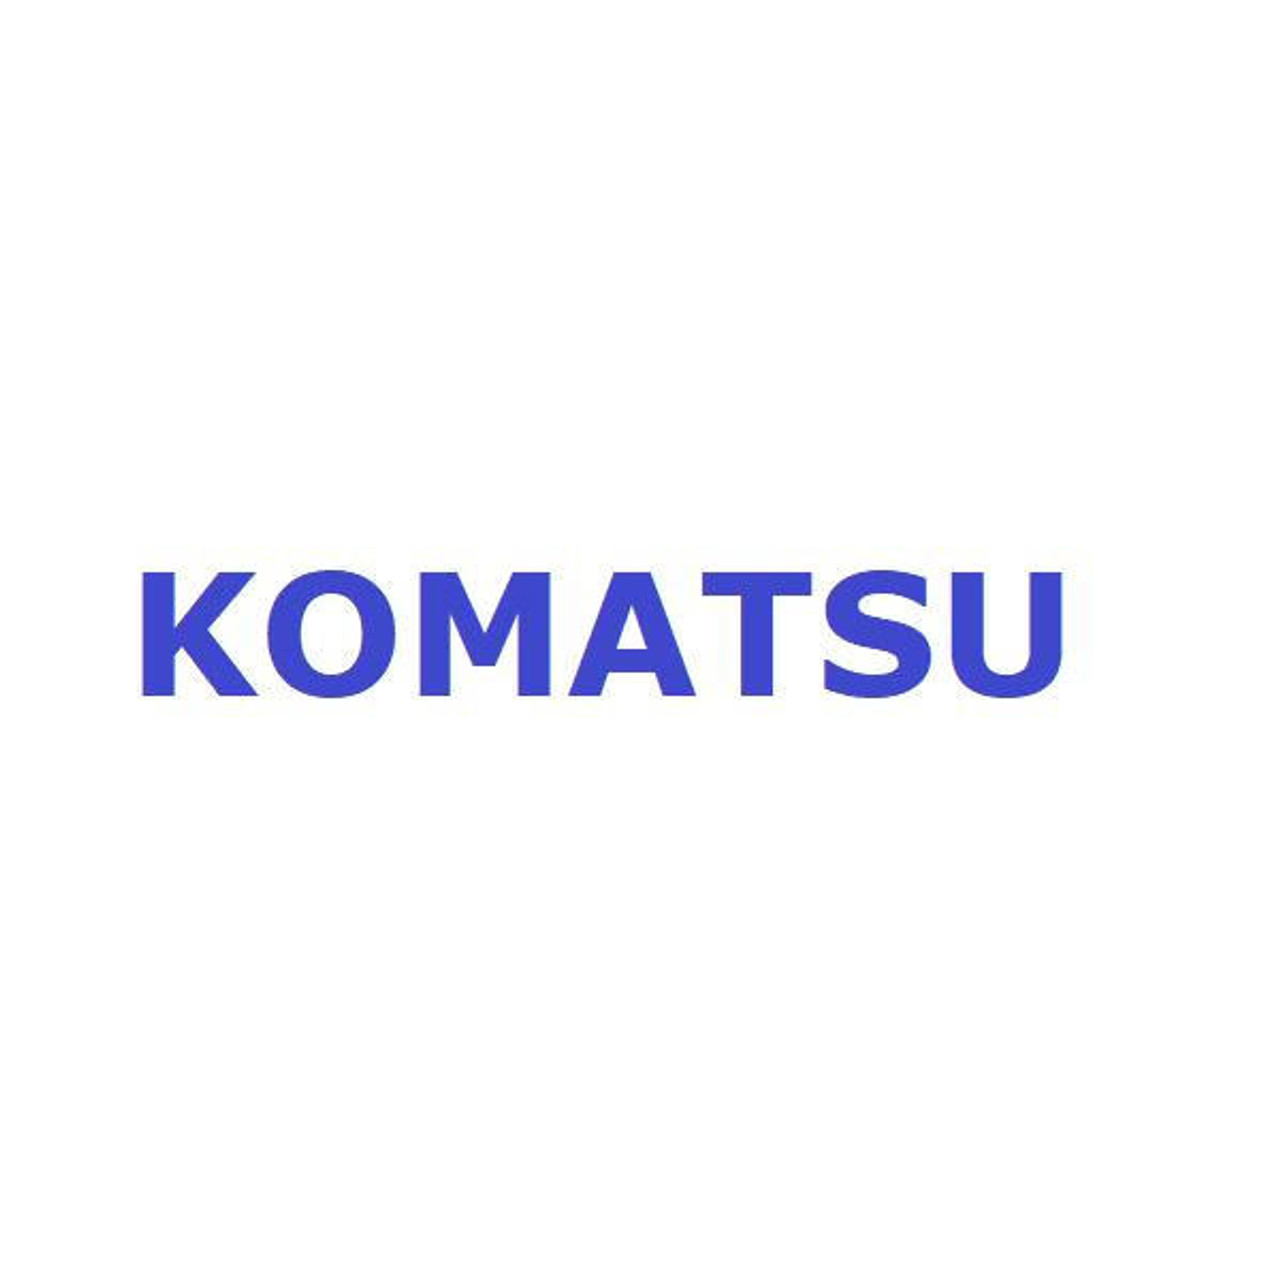 Komatsu Seal # 56D-50-13103K Seal Kit